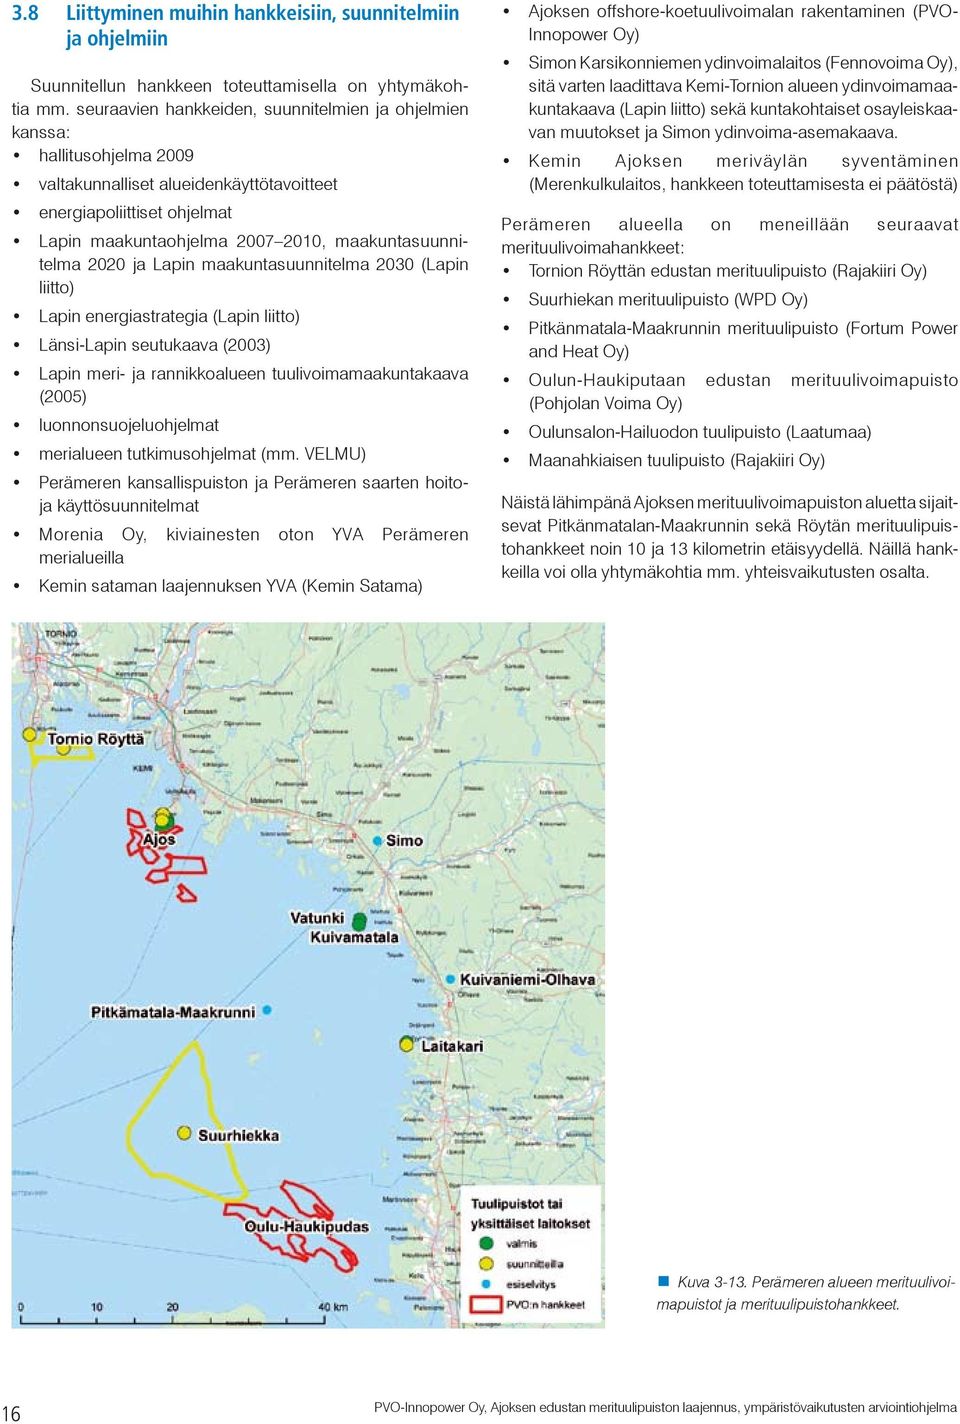 maakuntasuunnitelma 2020 ja Lapin maakuntasuunnitelma 2030 (Lapin liitto) Lapin energiastrategia (Lapin liitto) Länsi-Lapin seutukaava (2003) Lapin meri- ja rannikkoalueen tuulivoimamaakuntakaava